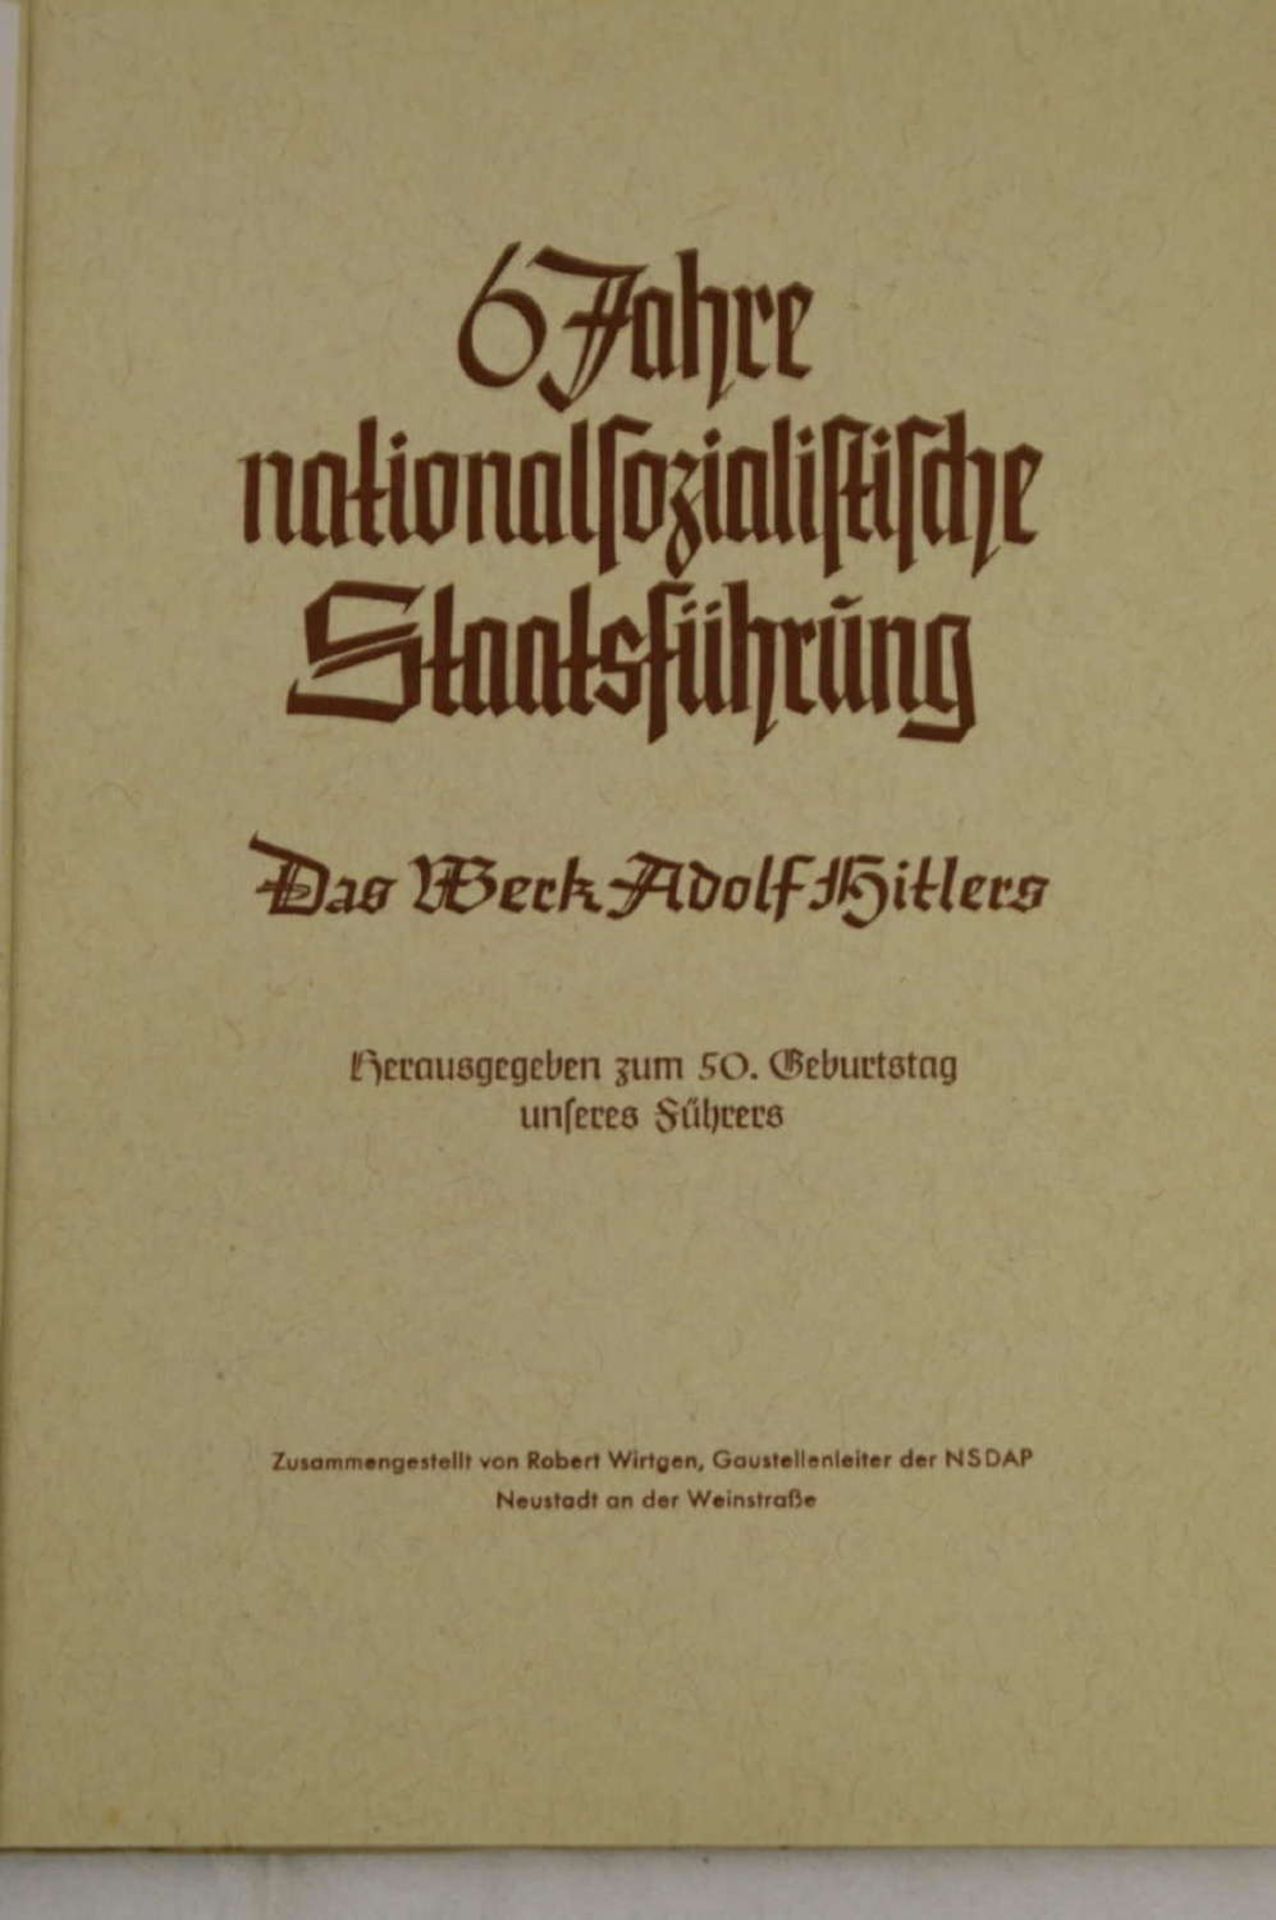 "6 Jahre nationalsozialistische Staatsführung - Das Werk Adolf Hitlers - herausgegeben zum 50.